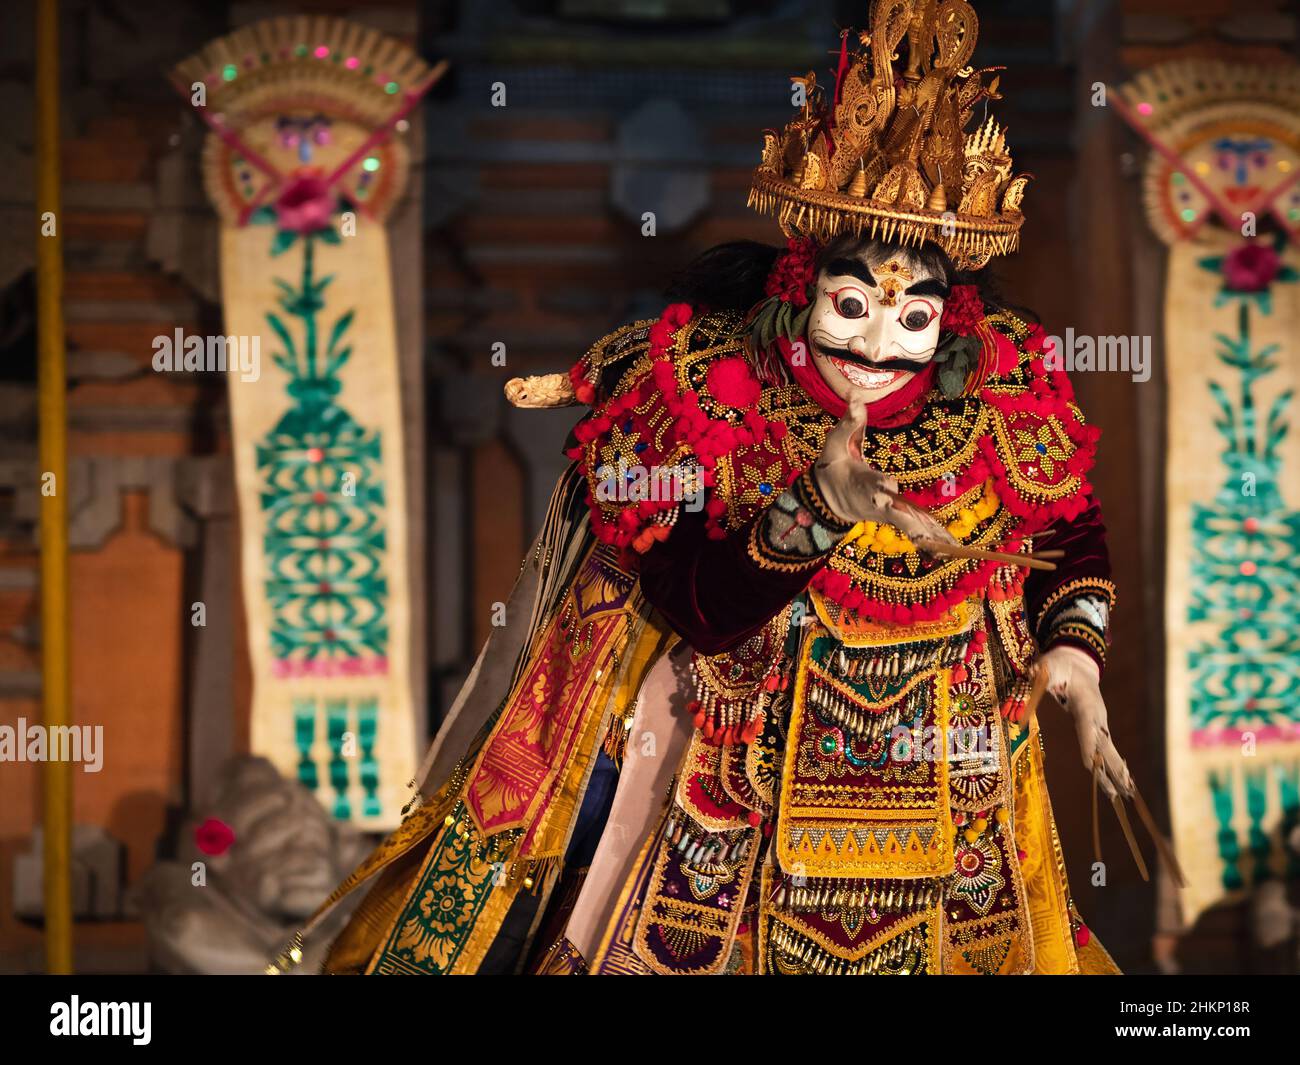 Spectacle de danse balinais avec masque de Topeng et cérémonie rituelle au temple de Pura Saraswati à Ubud, Bali, Indonésie. Banque D'Images